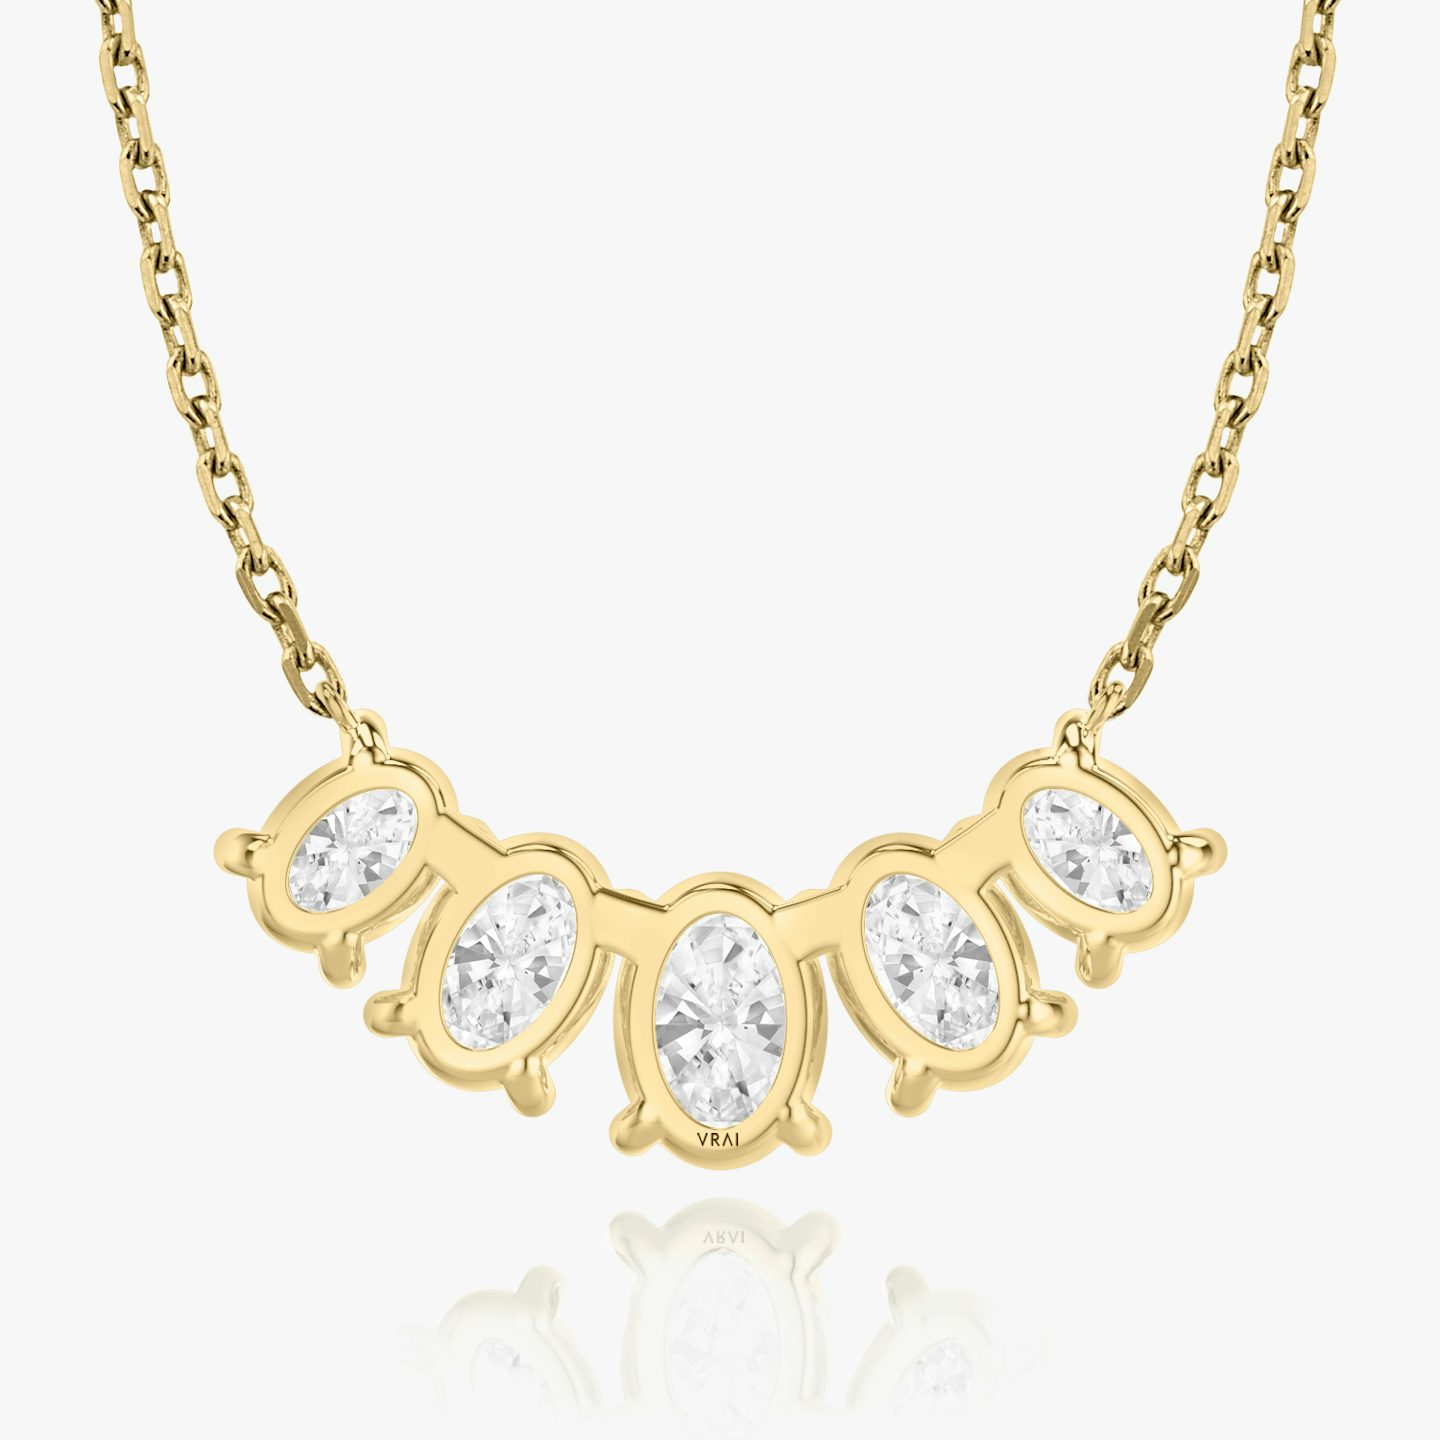 Collier Arc | Ovale | 14k | Or jaune 18 carats | Longueur de la chaîne: 16-18 | Taille des diamants: Large | Nombre de diamants: 5